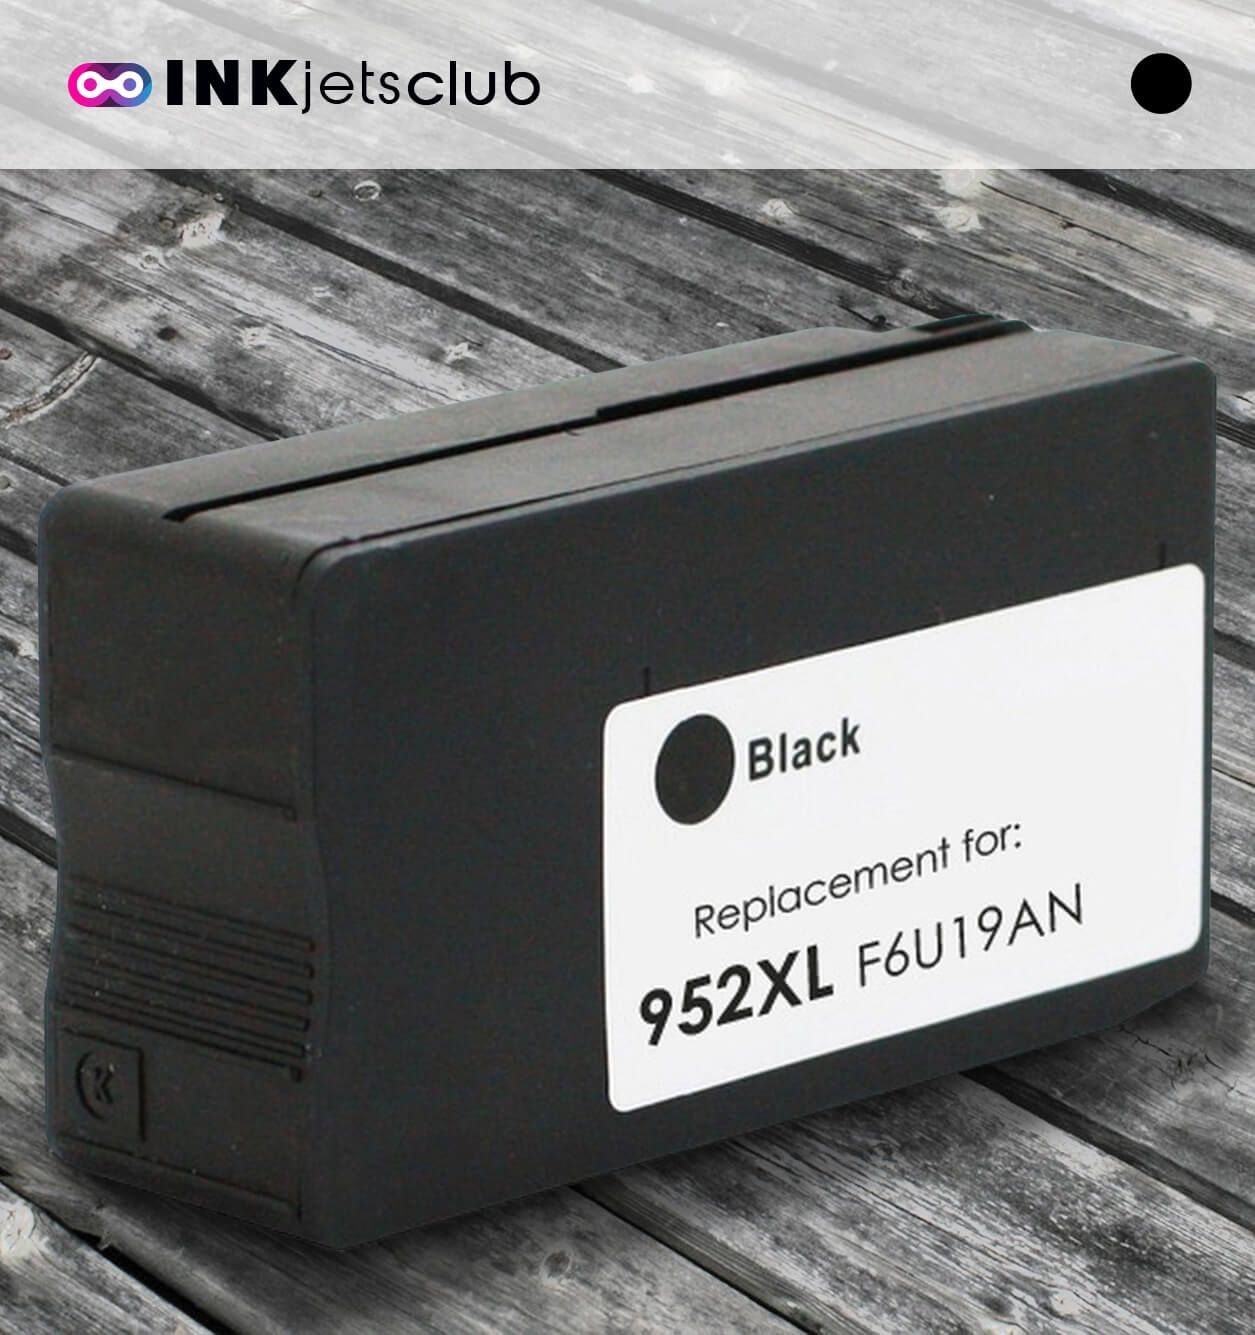 Buy OEM HP OfficeJet Pro 7740 High Capacity Black Ink Cartridge